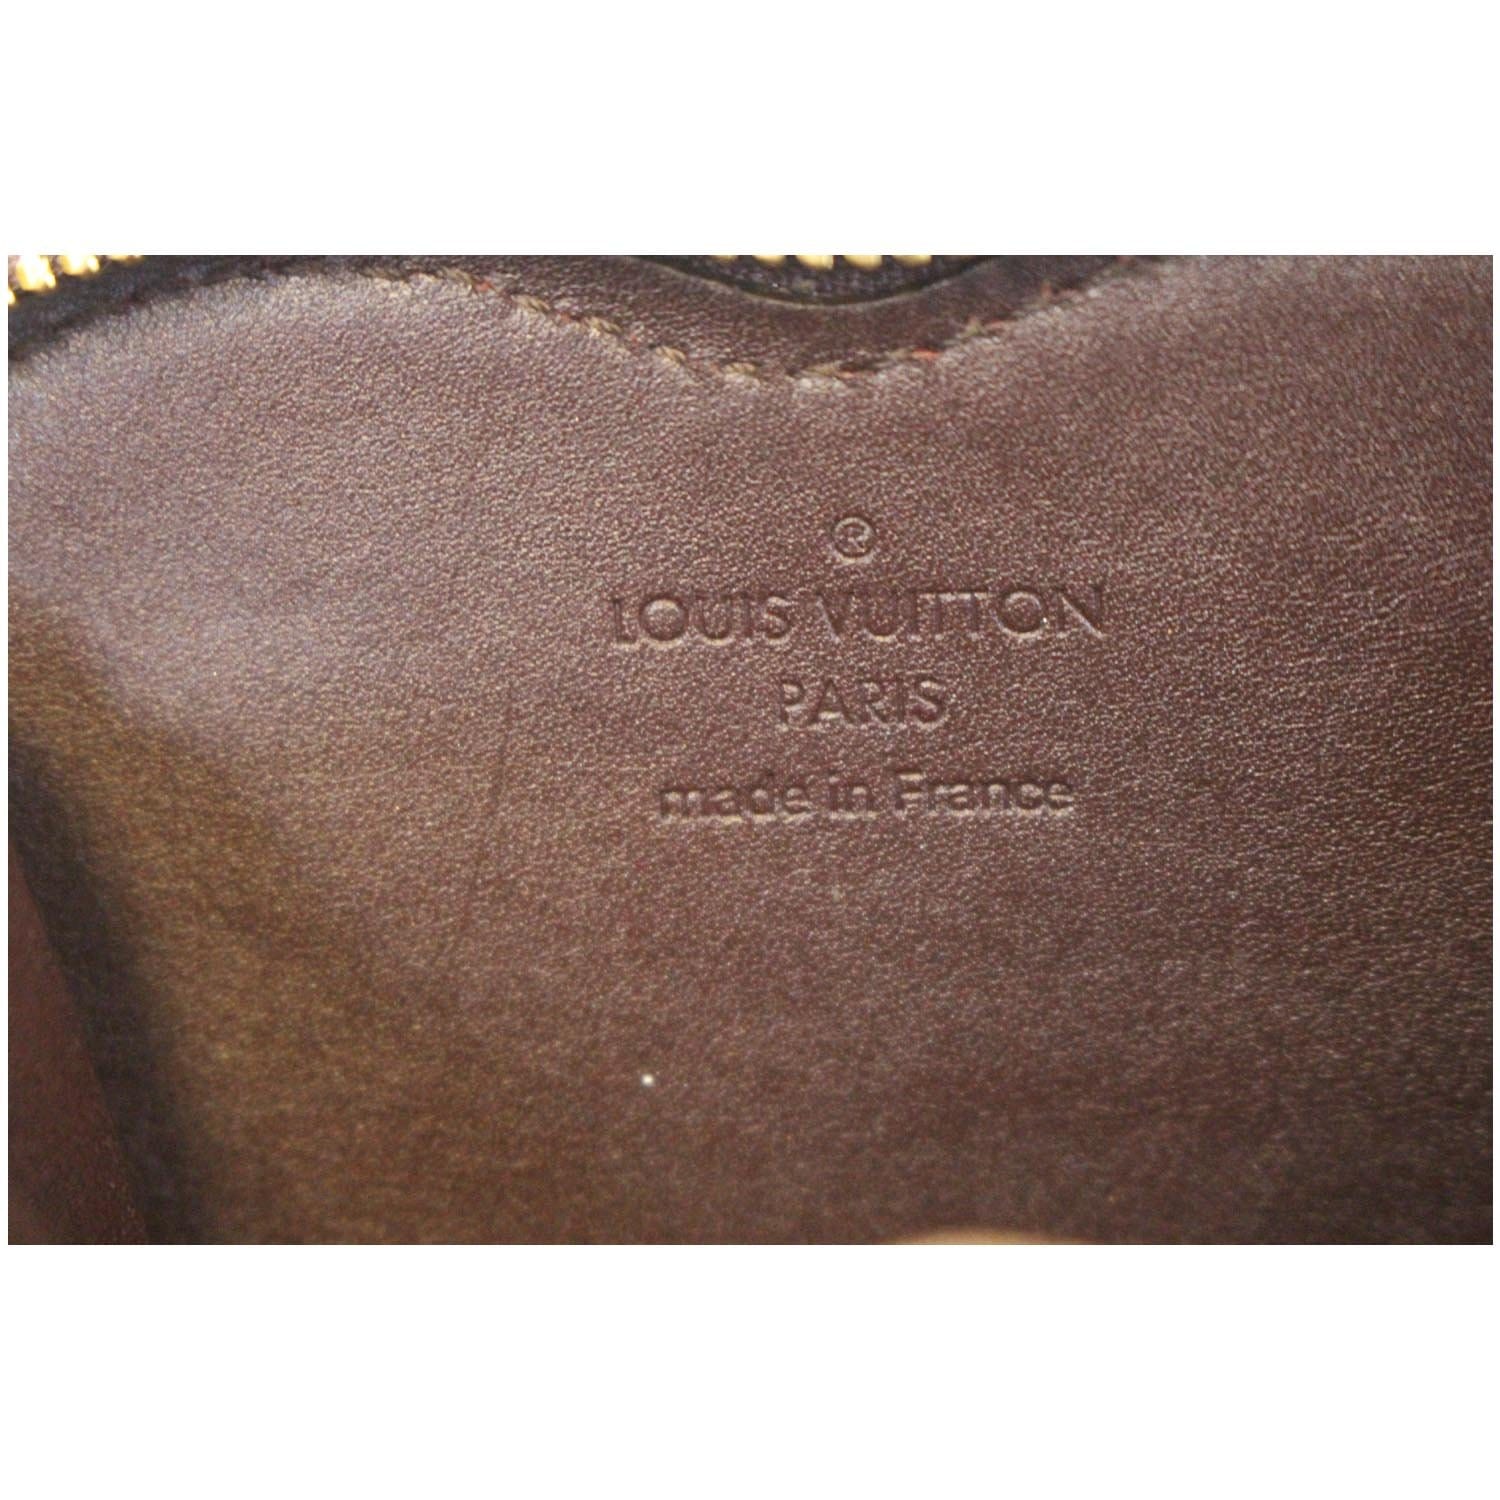 Louis Vuitton, Bags, Authentic Louis Vuitton Heart Coin Purse